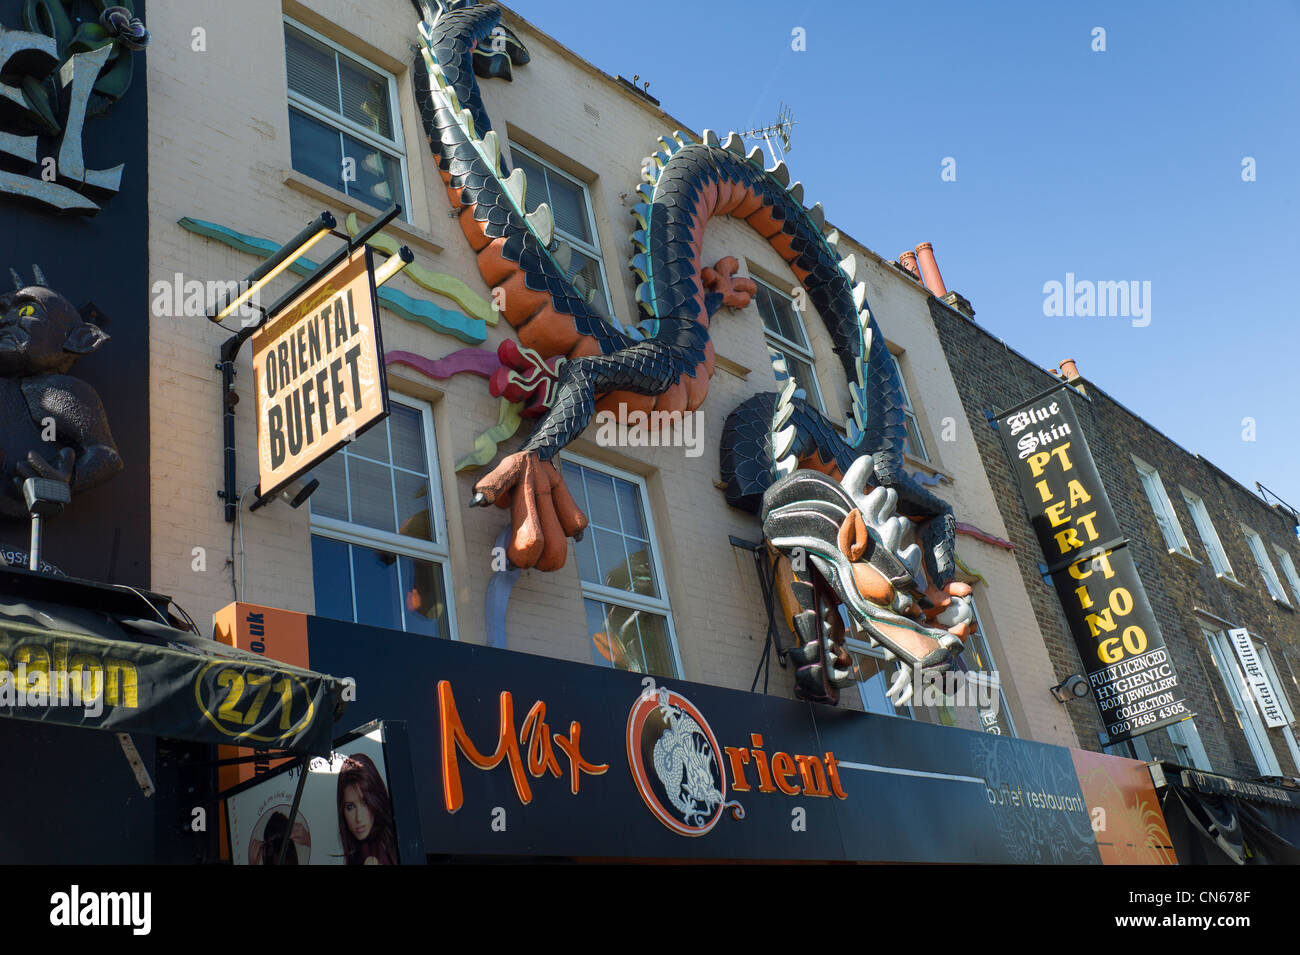 Orientalische Buffet, Drachen shop vorne, Camden Market, Camden Town, London England. Stockfoto